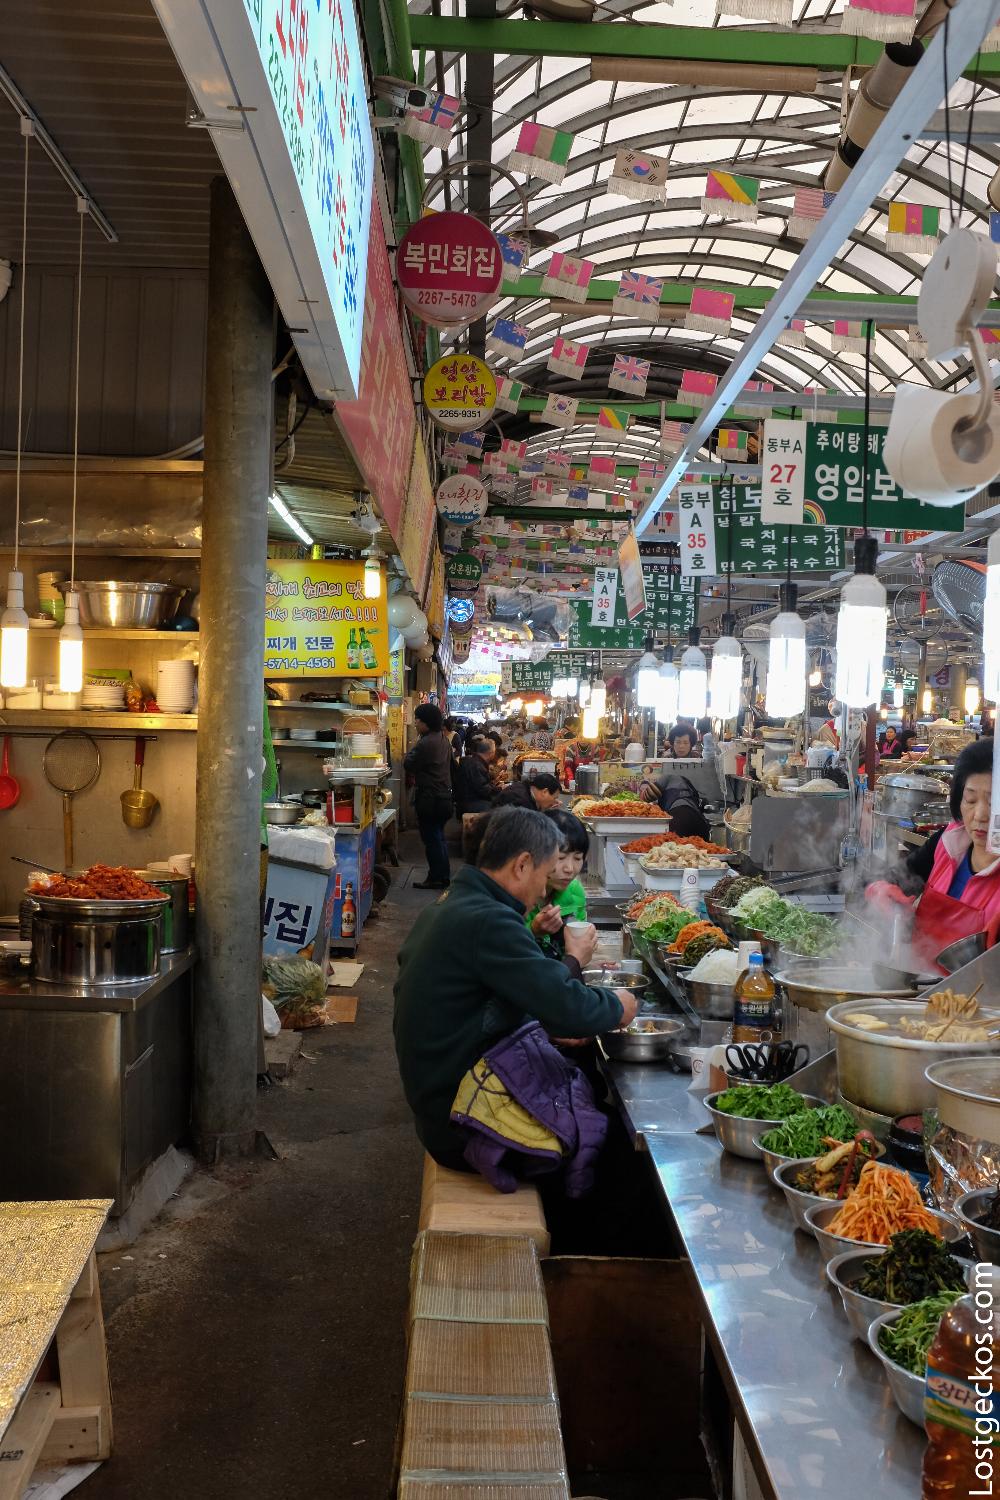 Gwangjang market, Korean street food mecca